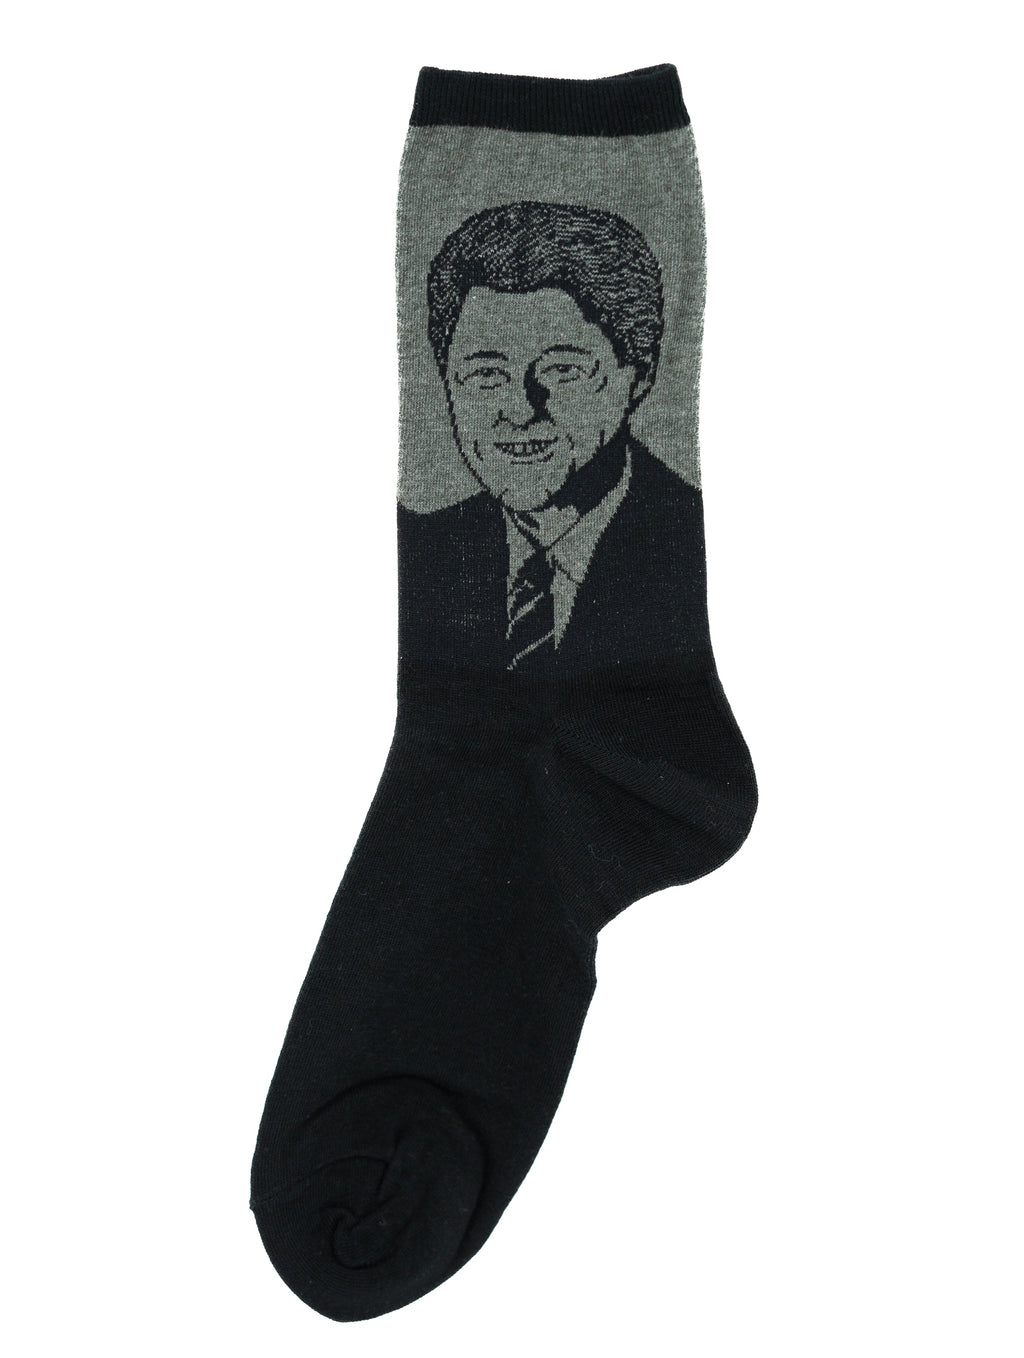 Bill Clinton Socks (Women's)